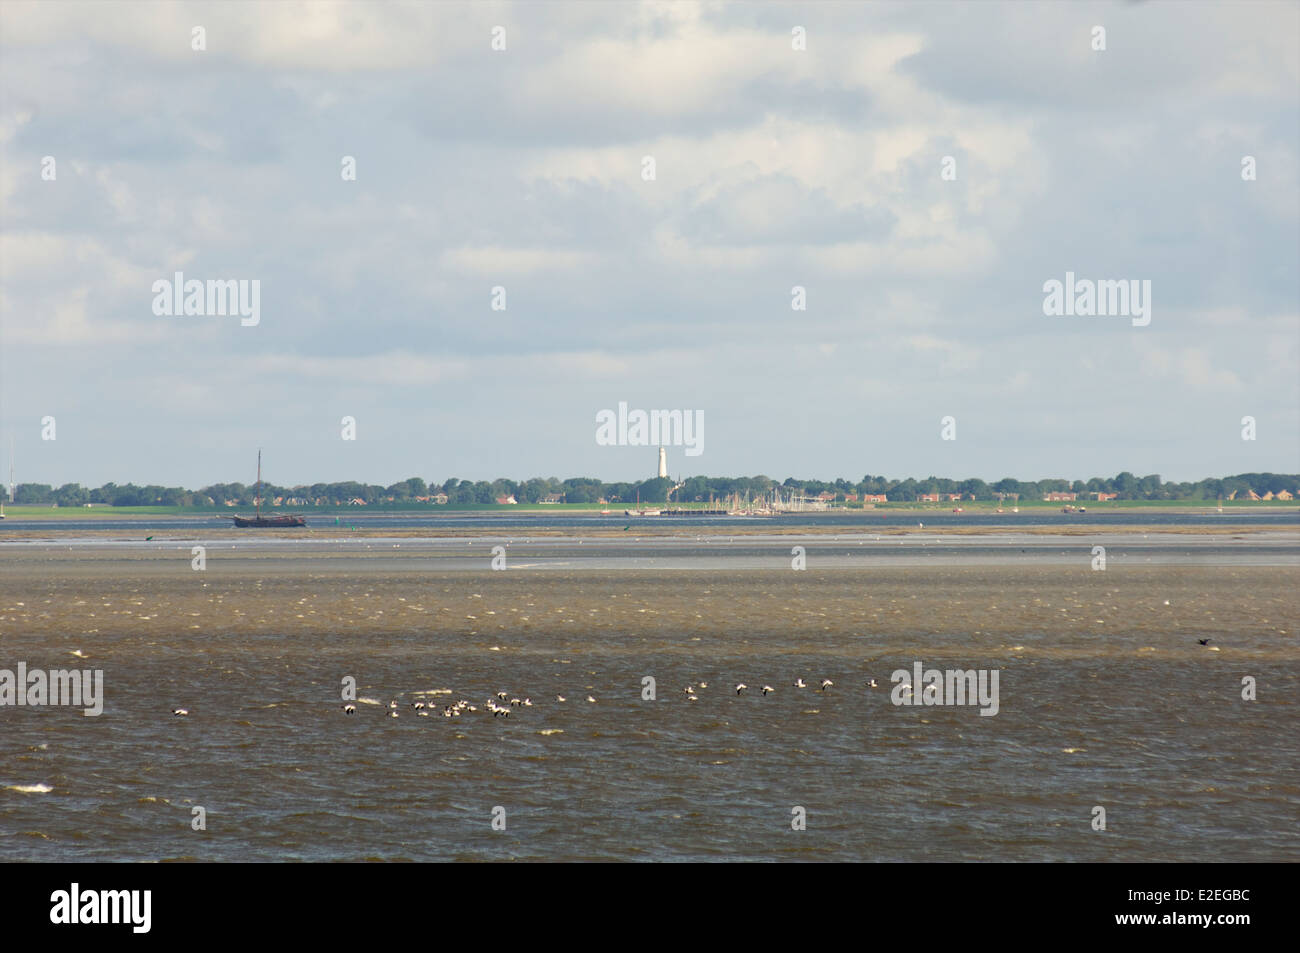 Vögel im Tiefflug über das Wattenmeer mit der Insel Schiermonnikoog im Hintergrund, Friesland, Niederlande Stockfoto